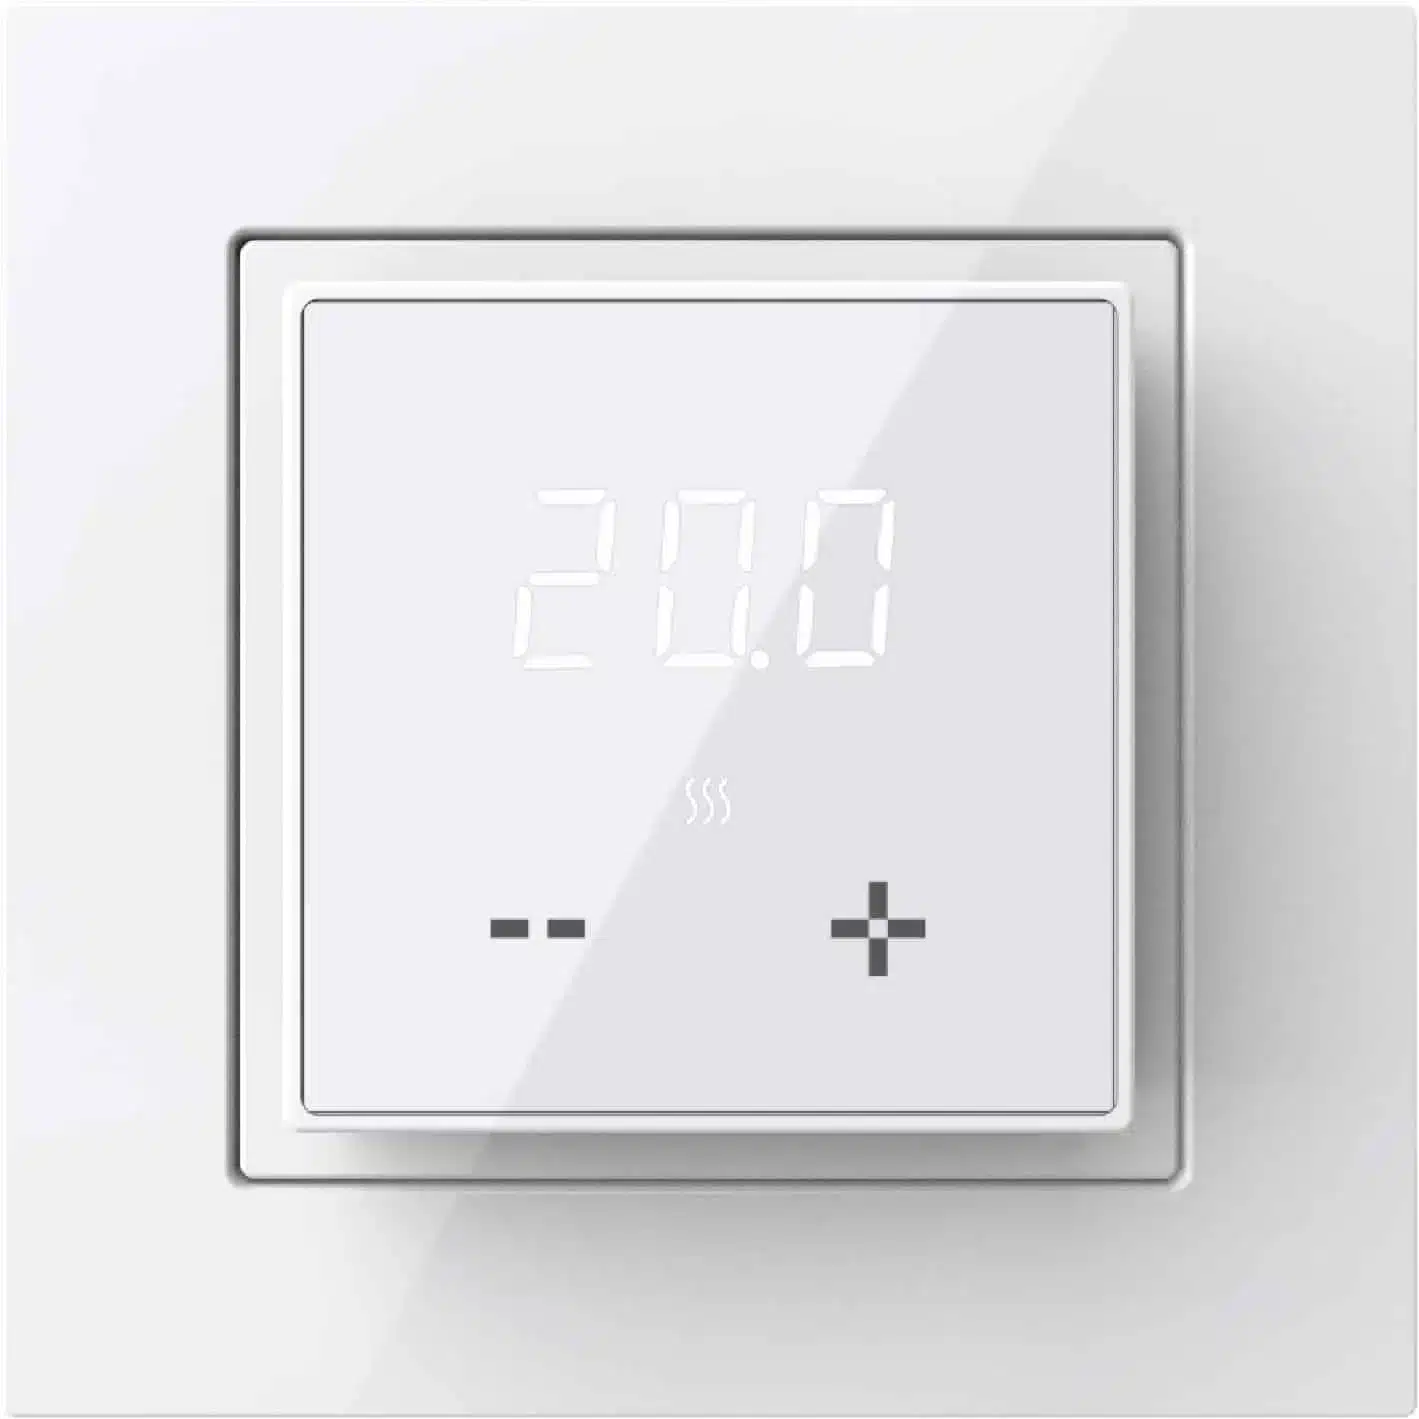 Põrandakütte termostaat põrandaanduriga temperatuuri regulaator ET-43